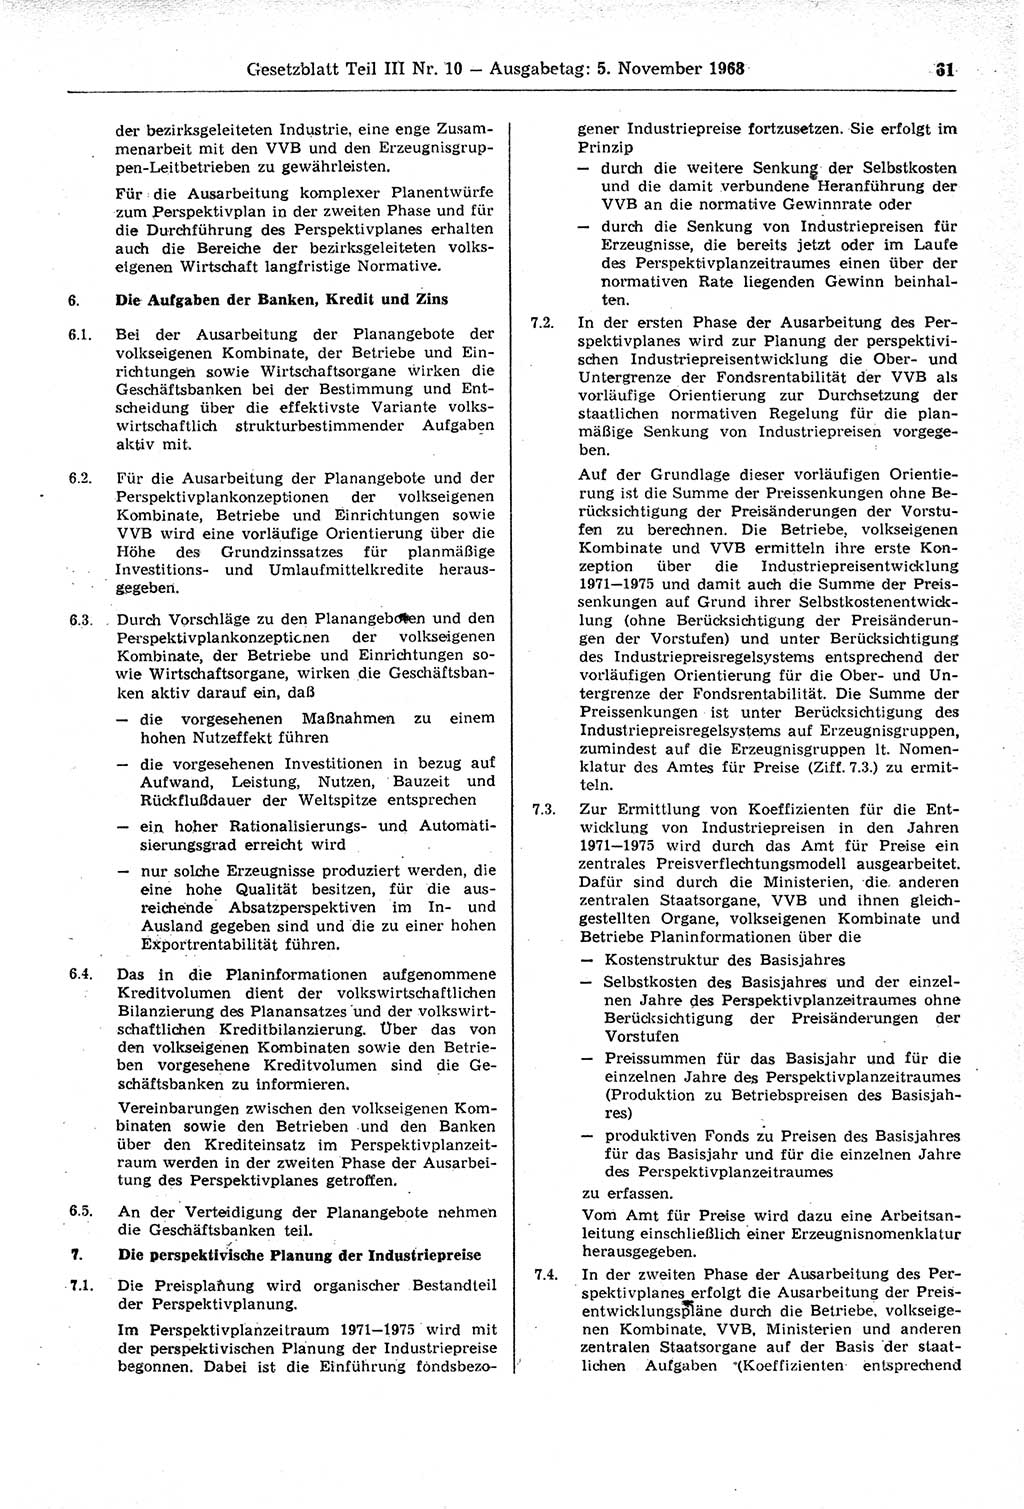 Gesetzblatt (GBl.) der Deutschen Demokratischen Republik (DDR) Teil ⅠⅠⅠ 1968, Seite 61 (GBl. DDR ⅠⅠⅠ 1968, S. 61)